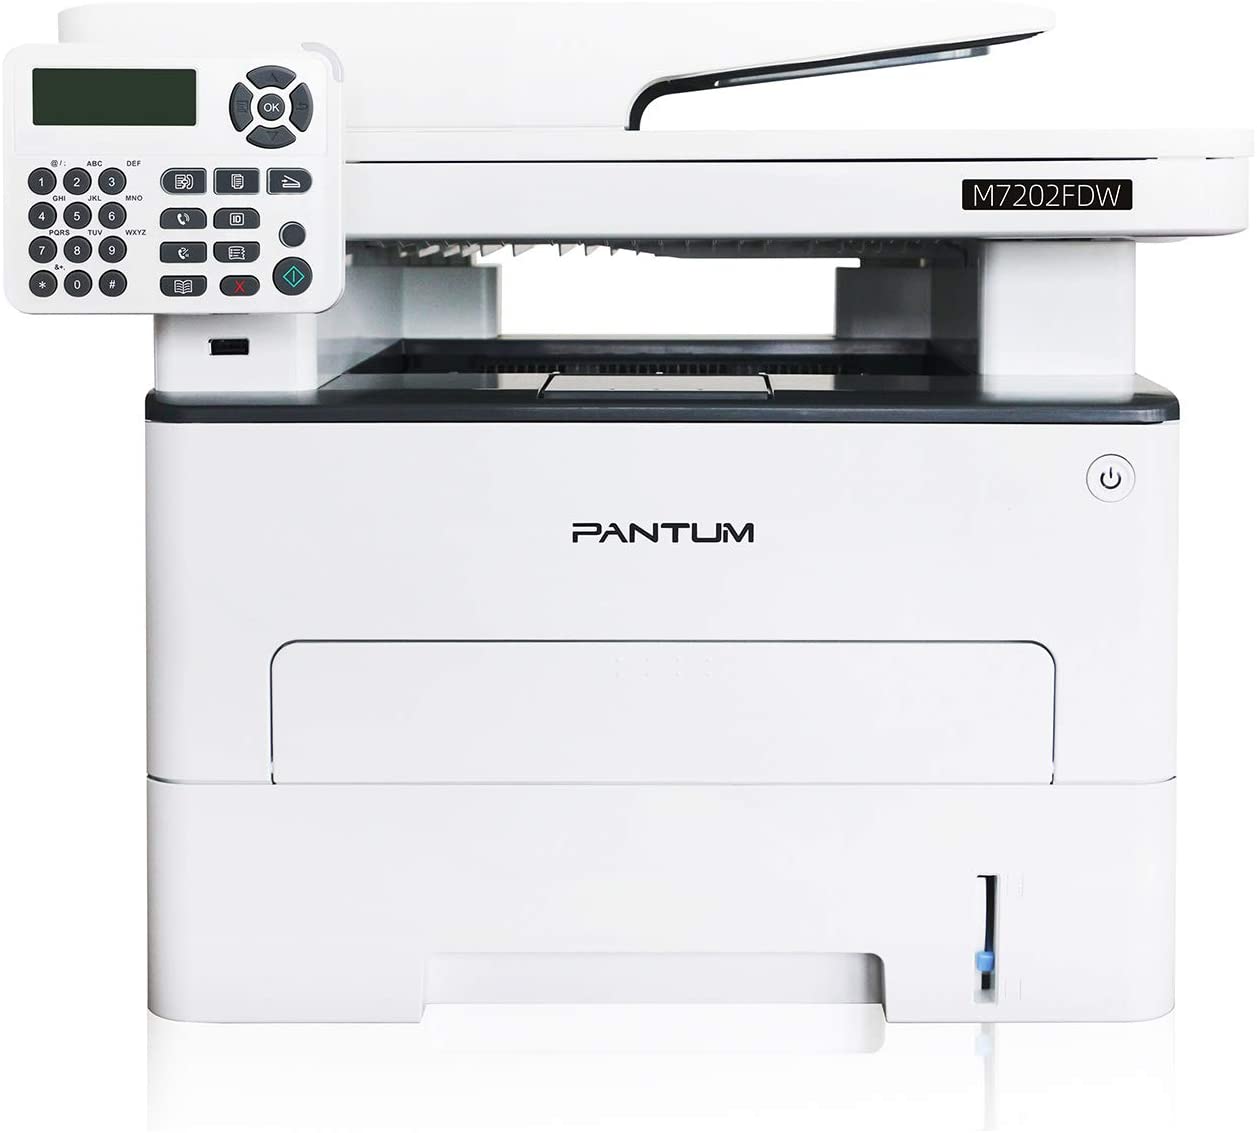 Pantum M7202FDW Monochrome Laser Printer